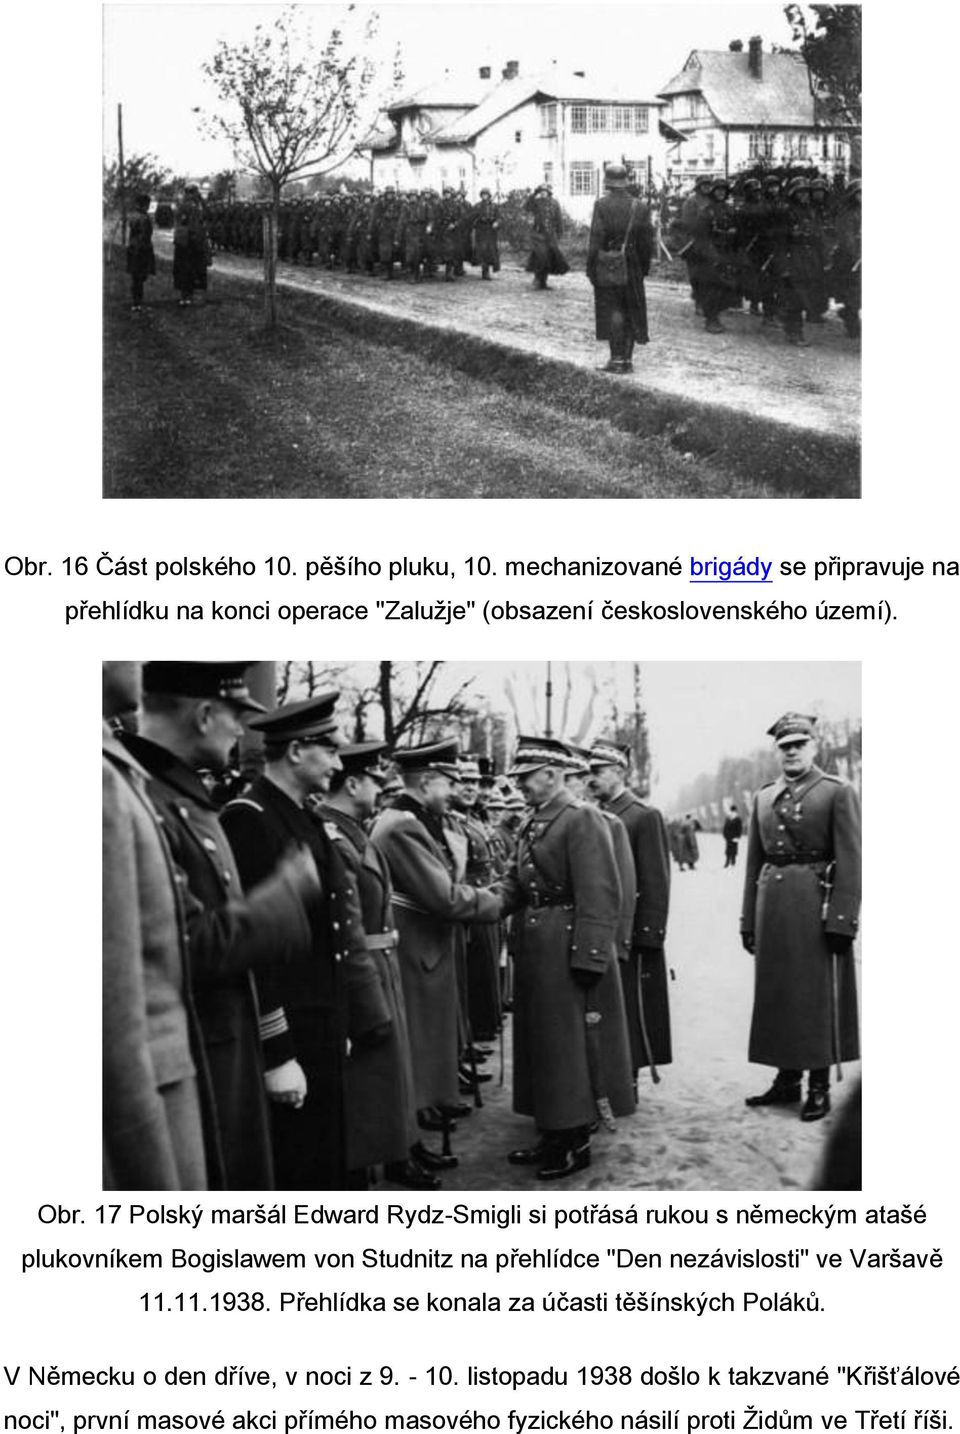 17 Polský maršál Edward Rydz-Smigli si potřásá rukou s německým atašé plukovníkem Bogislawem von Studnitz na přehlídce "Den